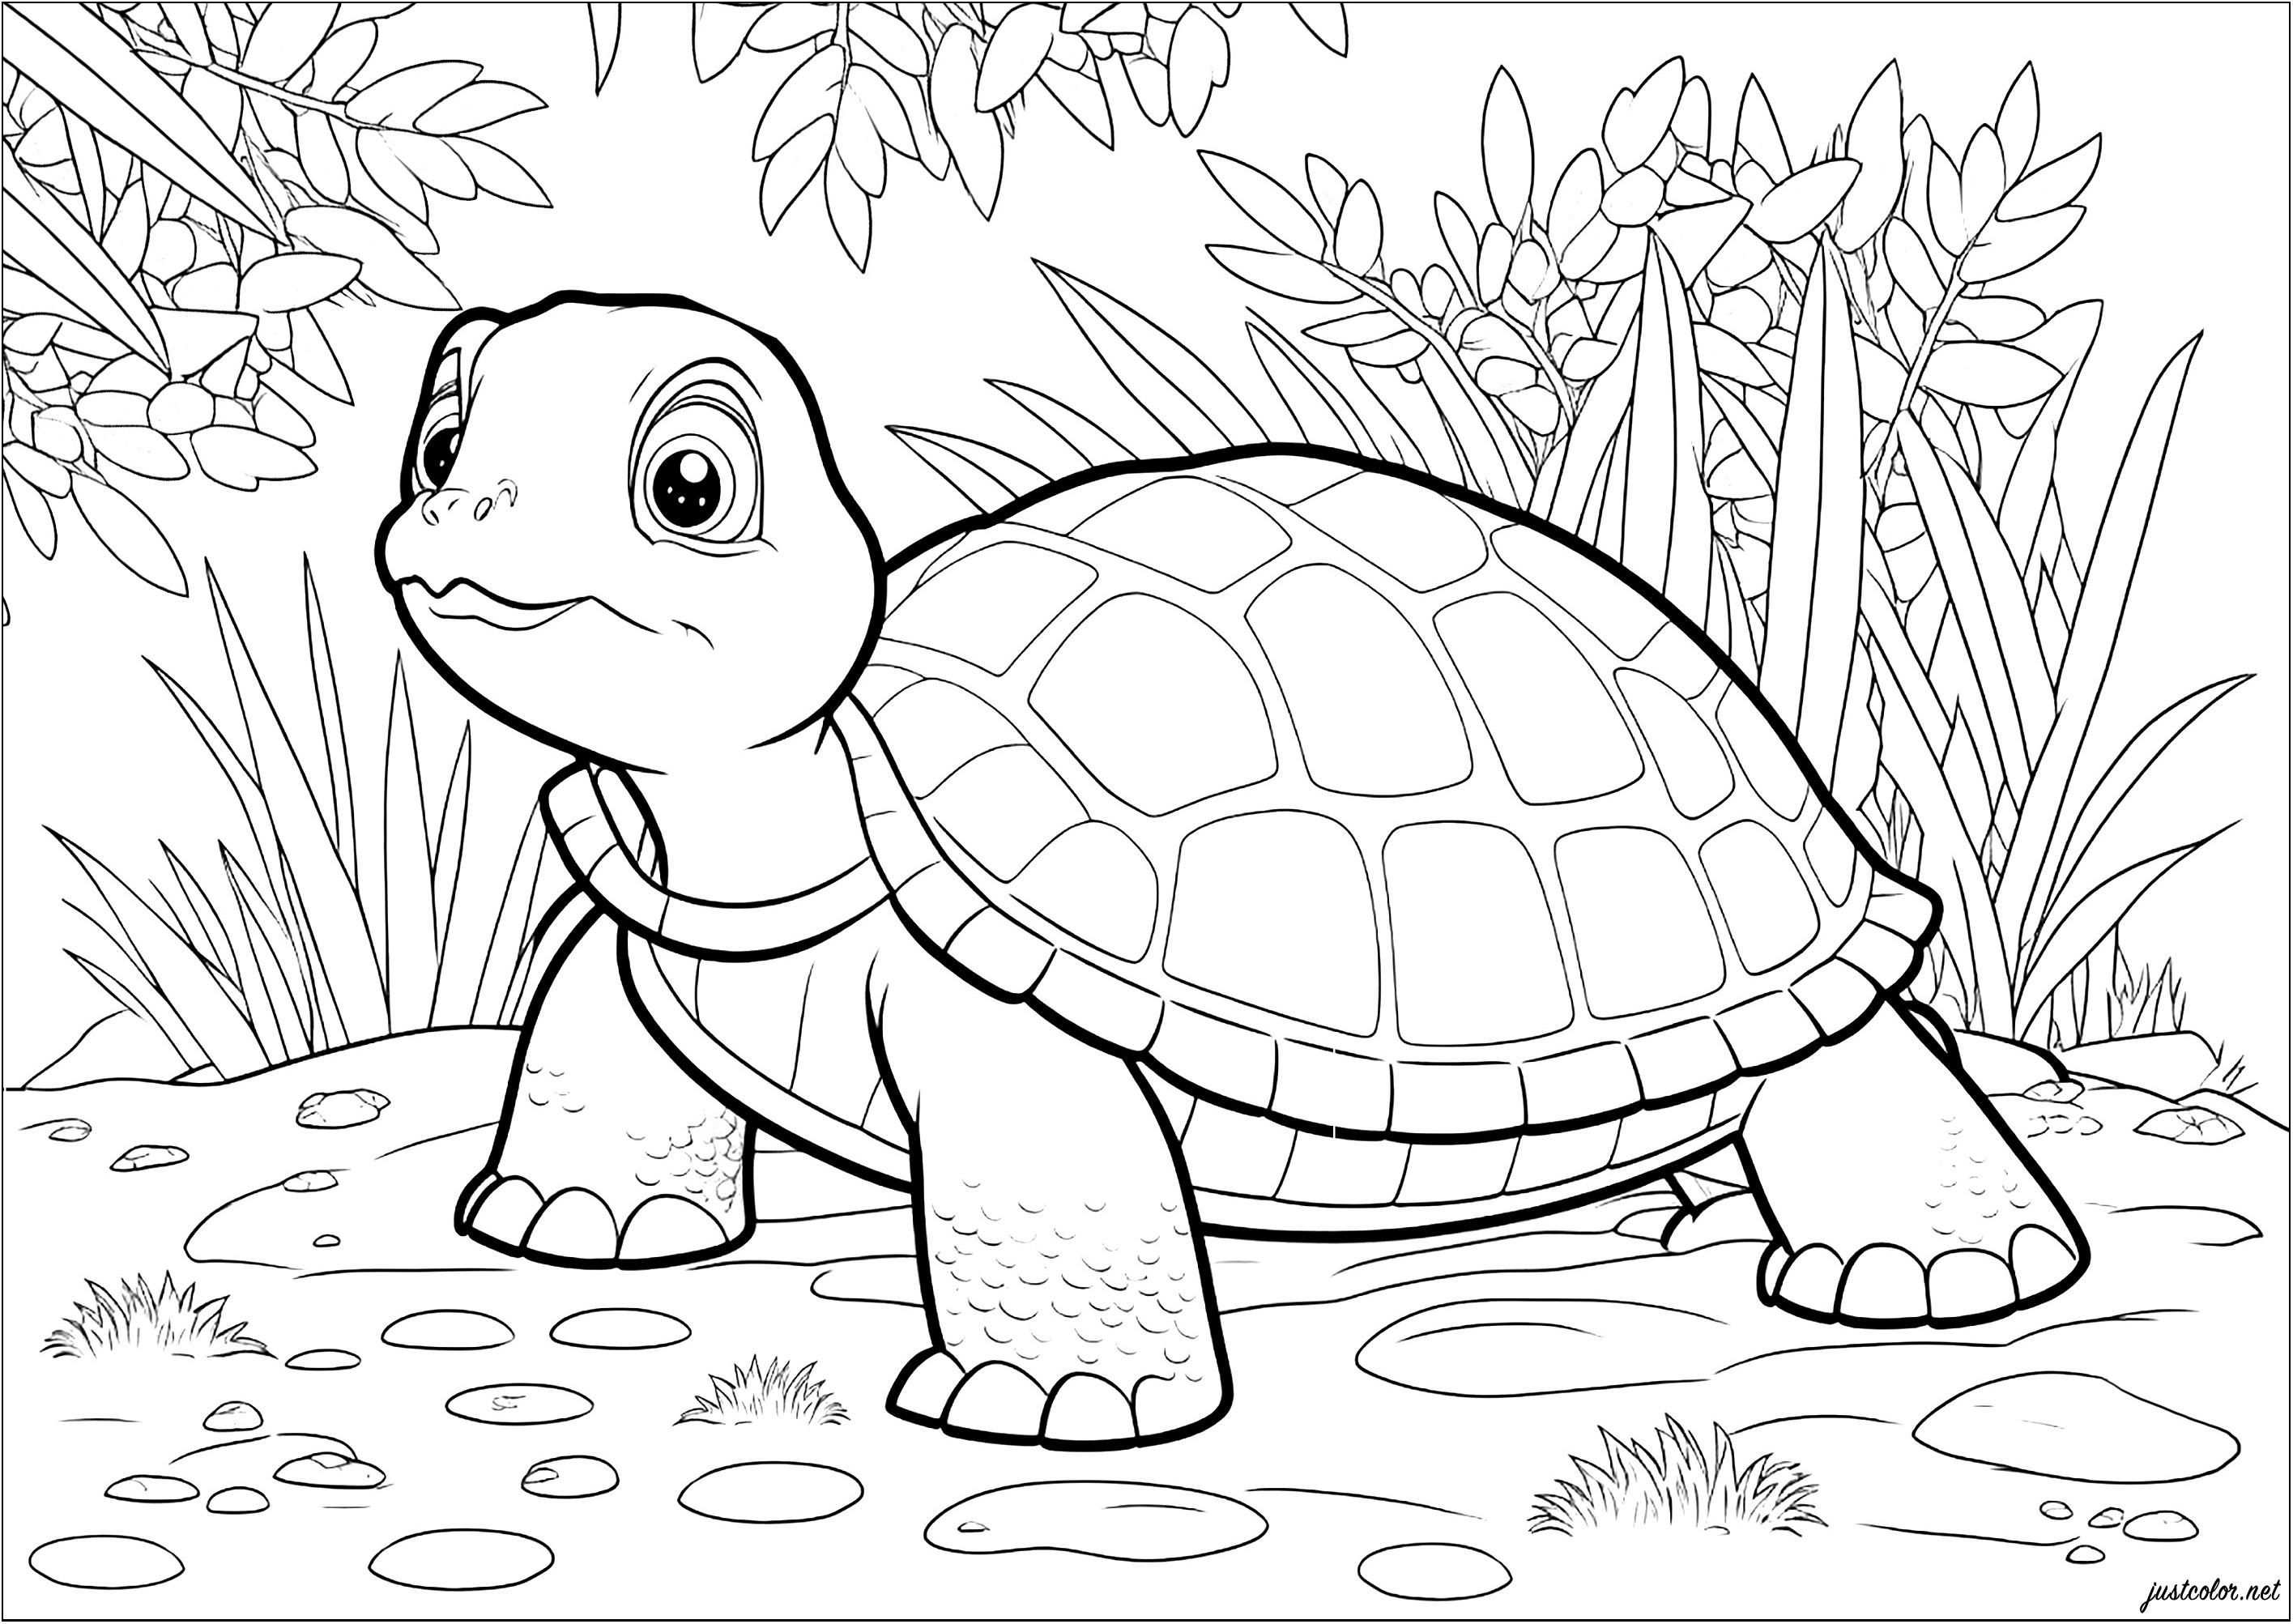 Hübsche Färbung einer Schildkröte in ihrer natürlichen Umgebung. Beobachten Sie die Entschlossenheit der Schildkröte, die sich langsam ihrem Ziel nähert.